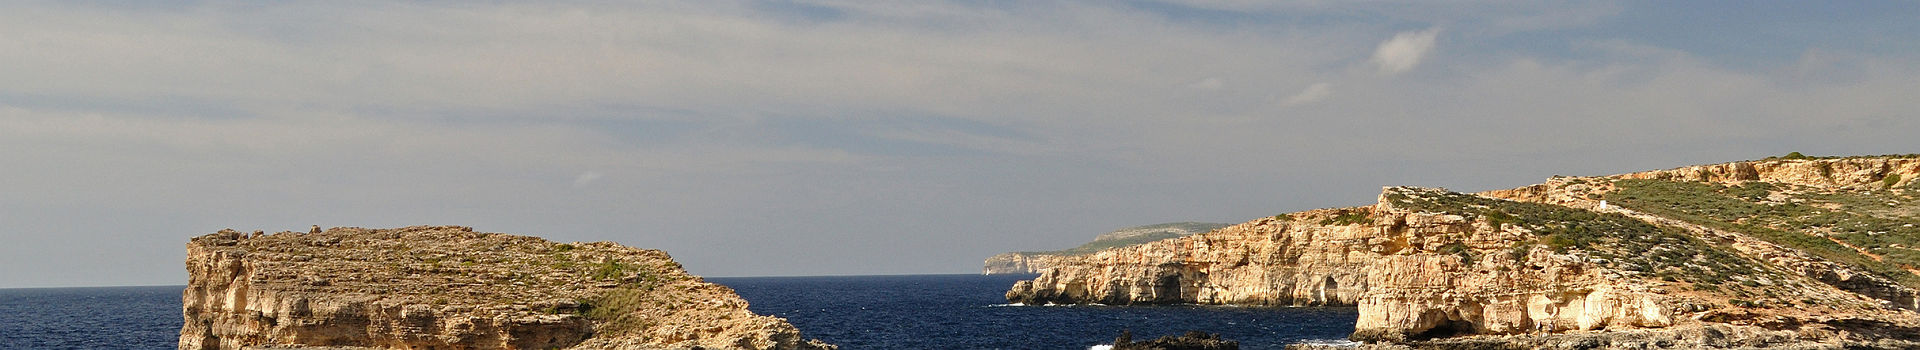 Ile de Comino - Malte